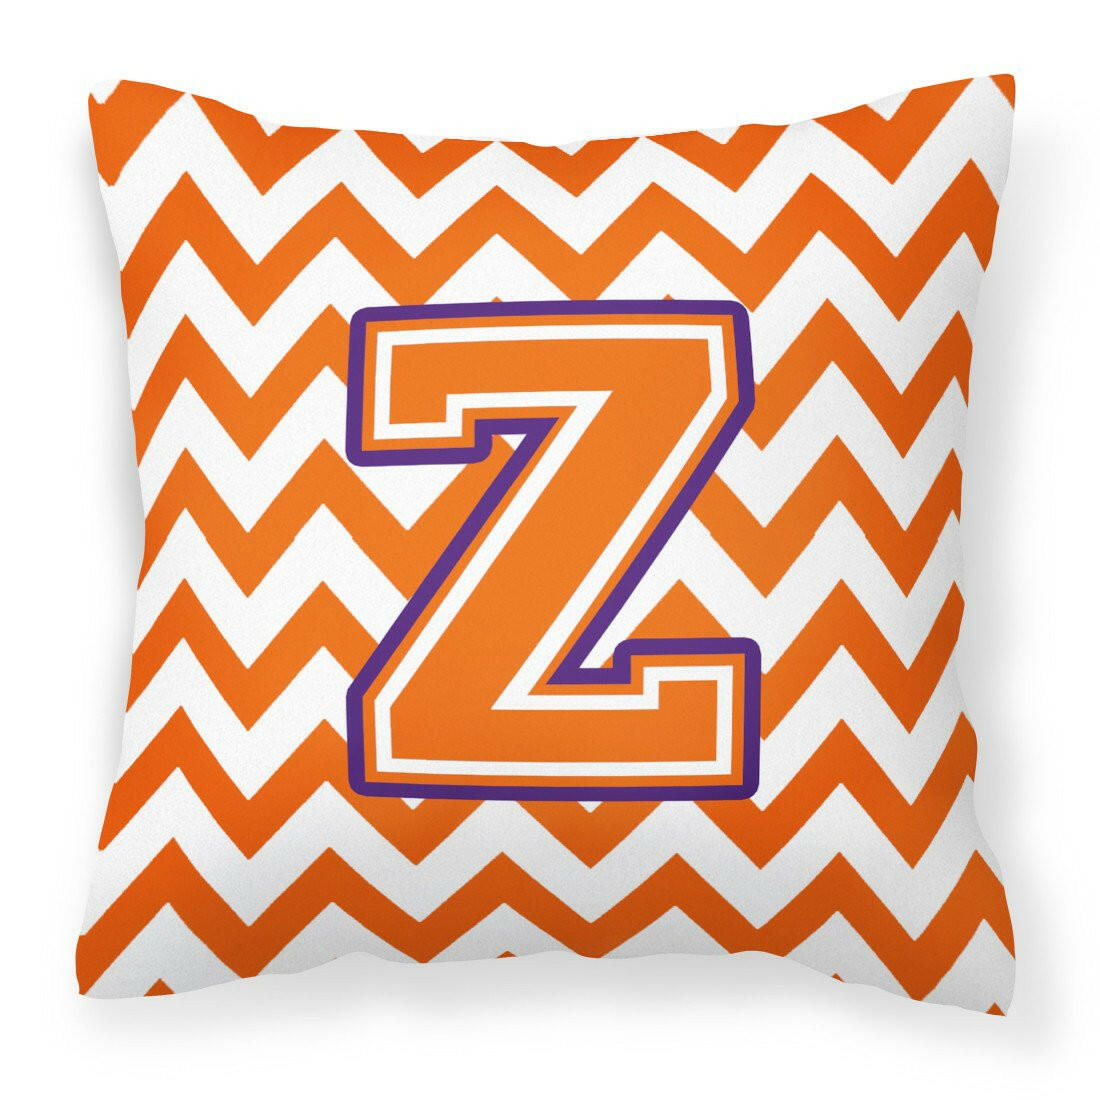 Letter Z Chevron Orange and Regalia Fabric Decorative Pillow CJ1062-ZPW1414 by Caroline's Treasures